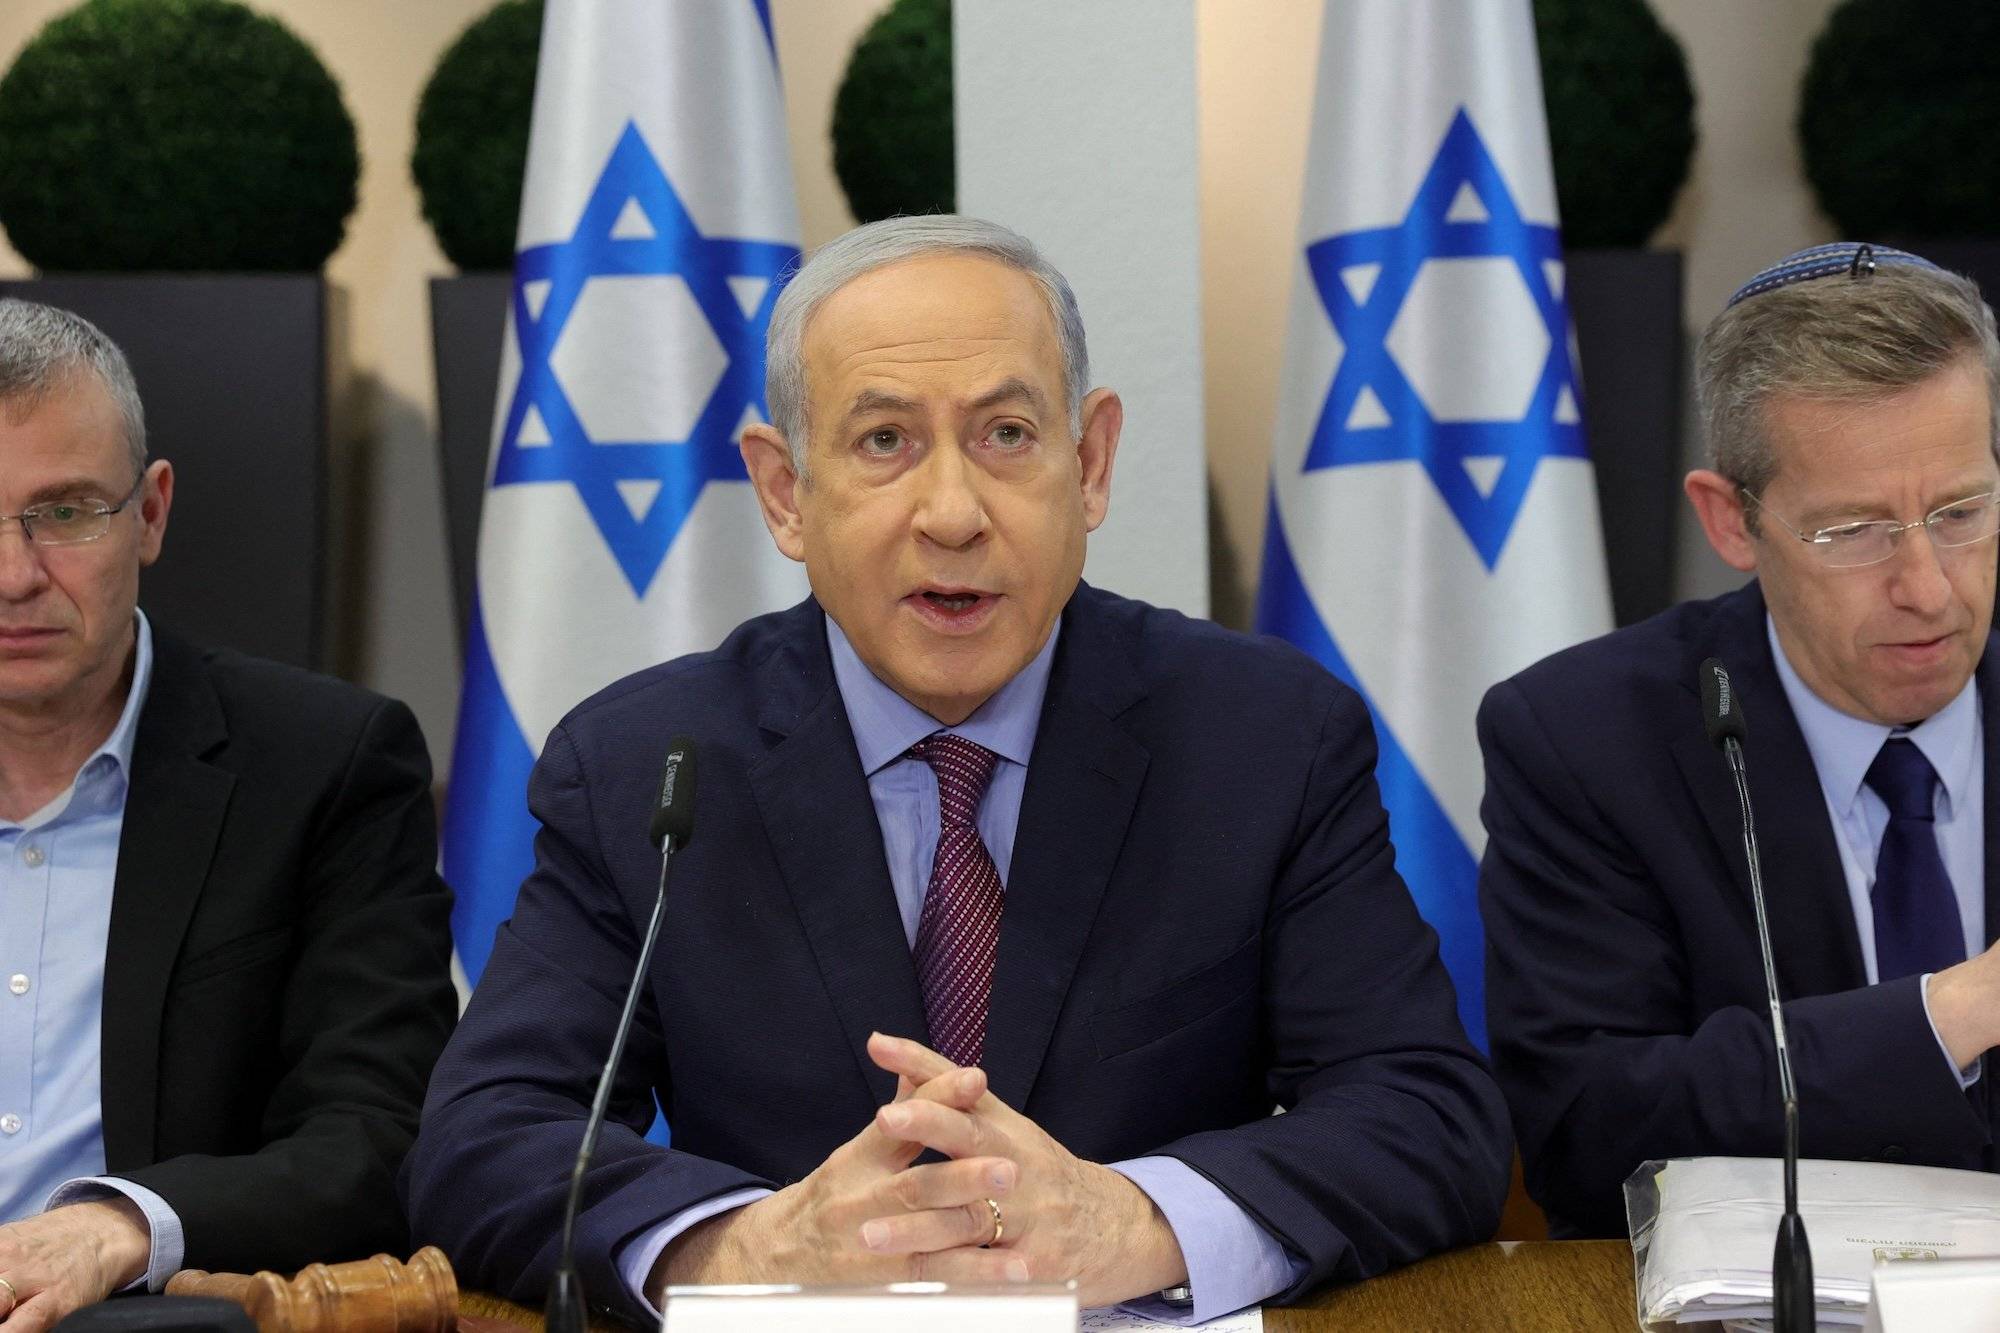 Binjamin Netanjahu przemawia na konferencji na tle flag Izraela. Siedzi za stołem i opiera na nim przedramiona, ma splecione palce dłoni.